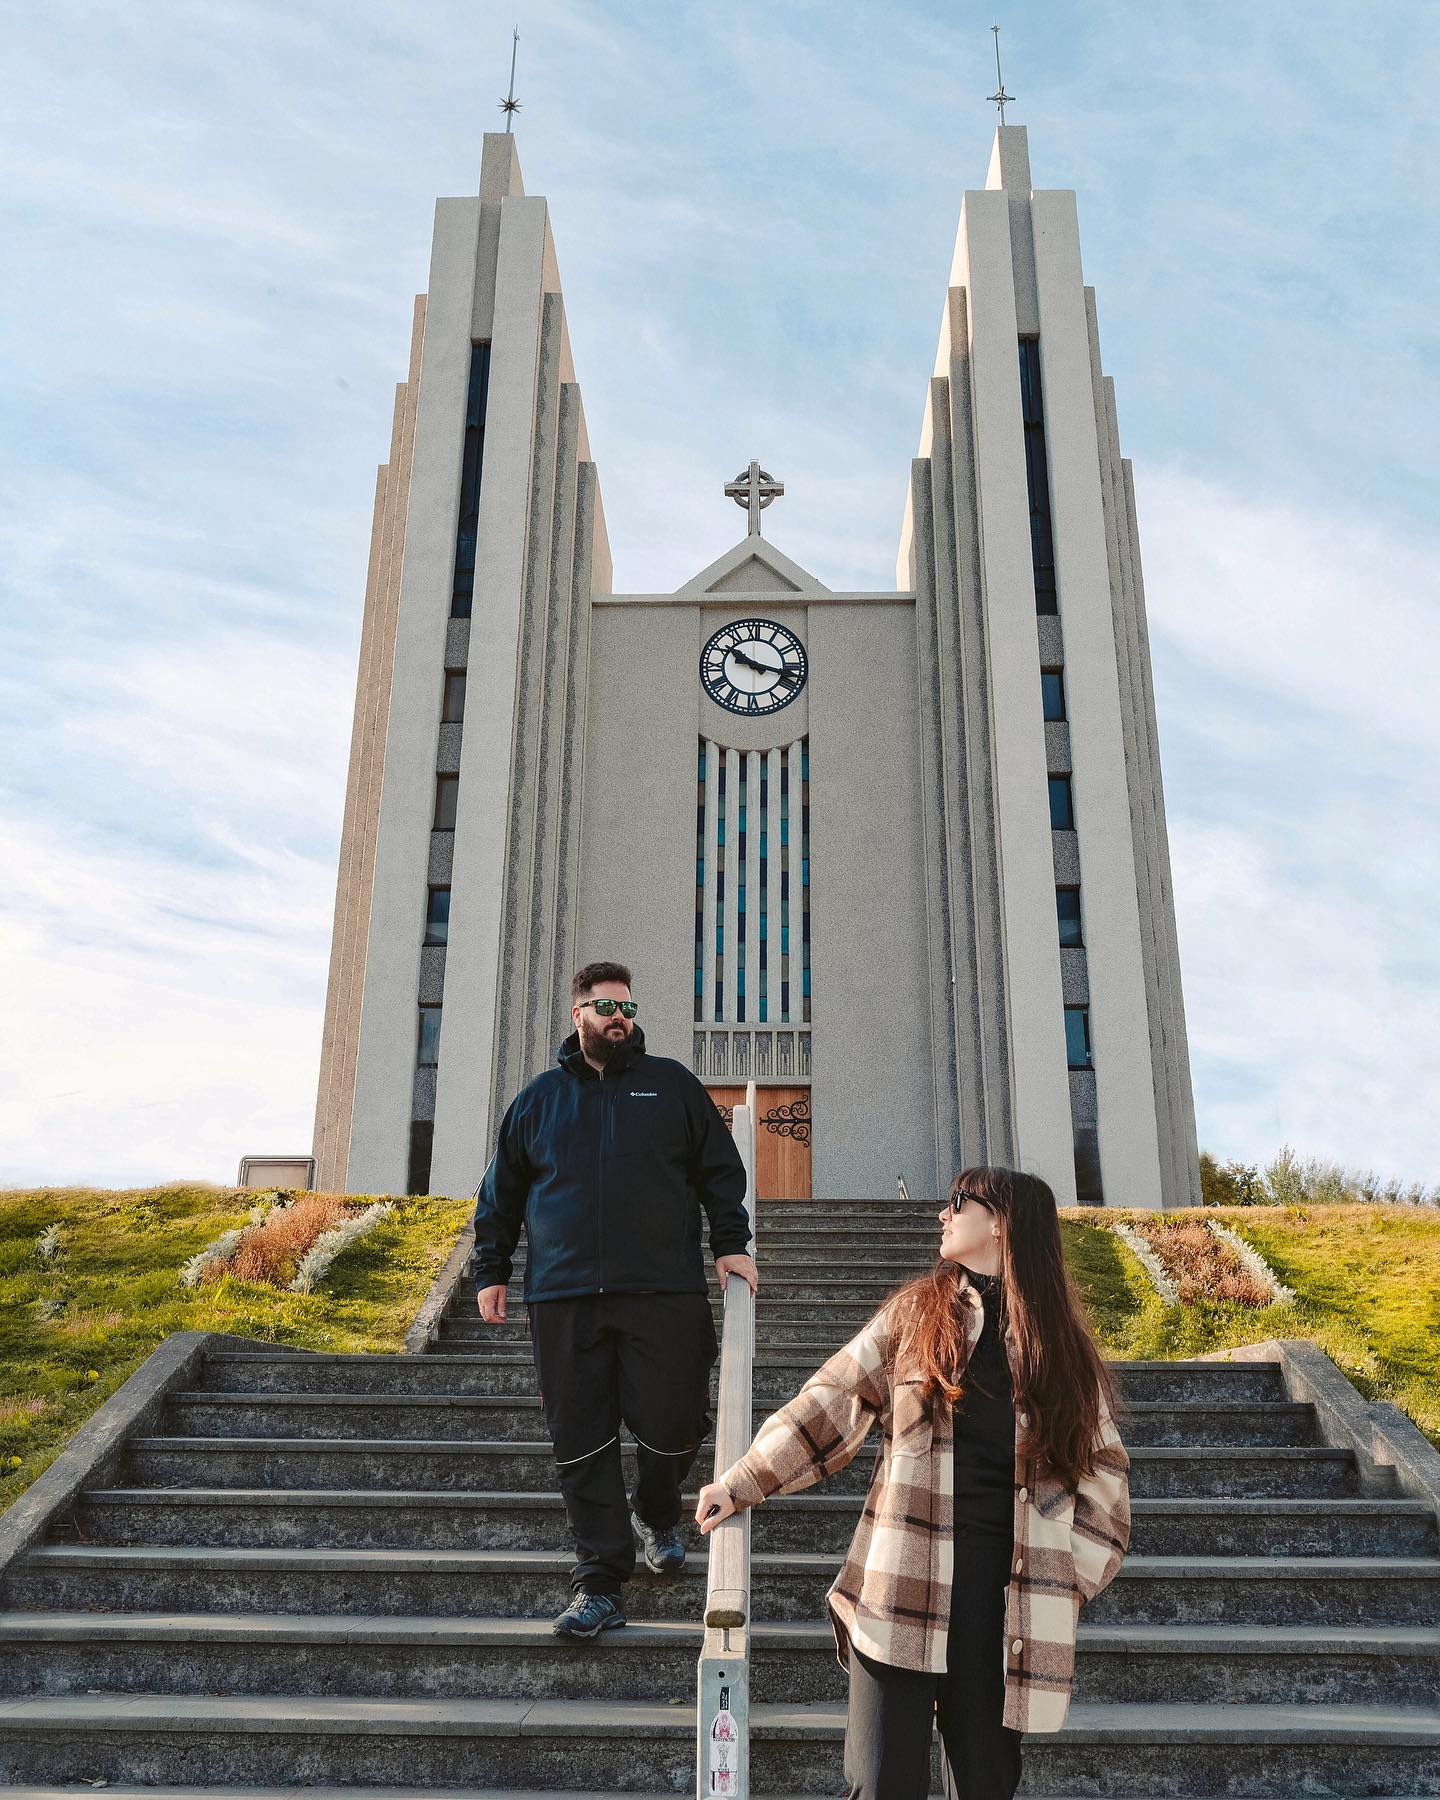 .
💒
.
Cuando crees que estudiar Inglés Antiguo no te ha servido de nada pero llegas a Islandia y descubres que todavía entiendes palabras en Old Norse⚡️
.
Hay muchísimas iglesias (kirkjas) en Islandia y cada una con un encanto especial 🖤 ésta es la de Akureyri, una de nuestras preferias.
.
#viajesglobetrotter #iceland #akureyri #mondofotodelmes #travelblogger